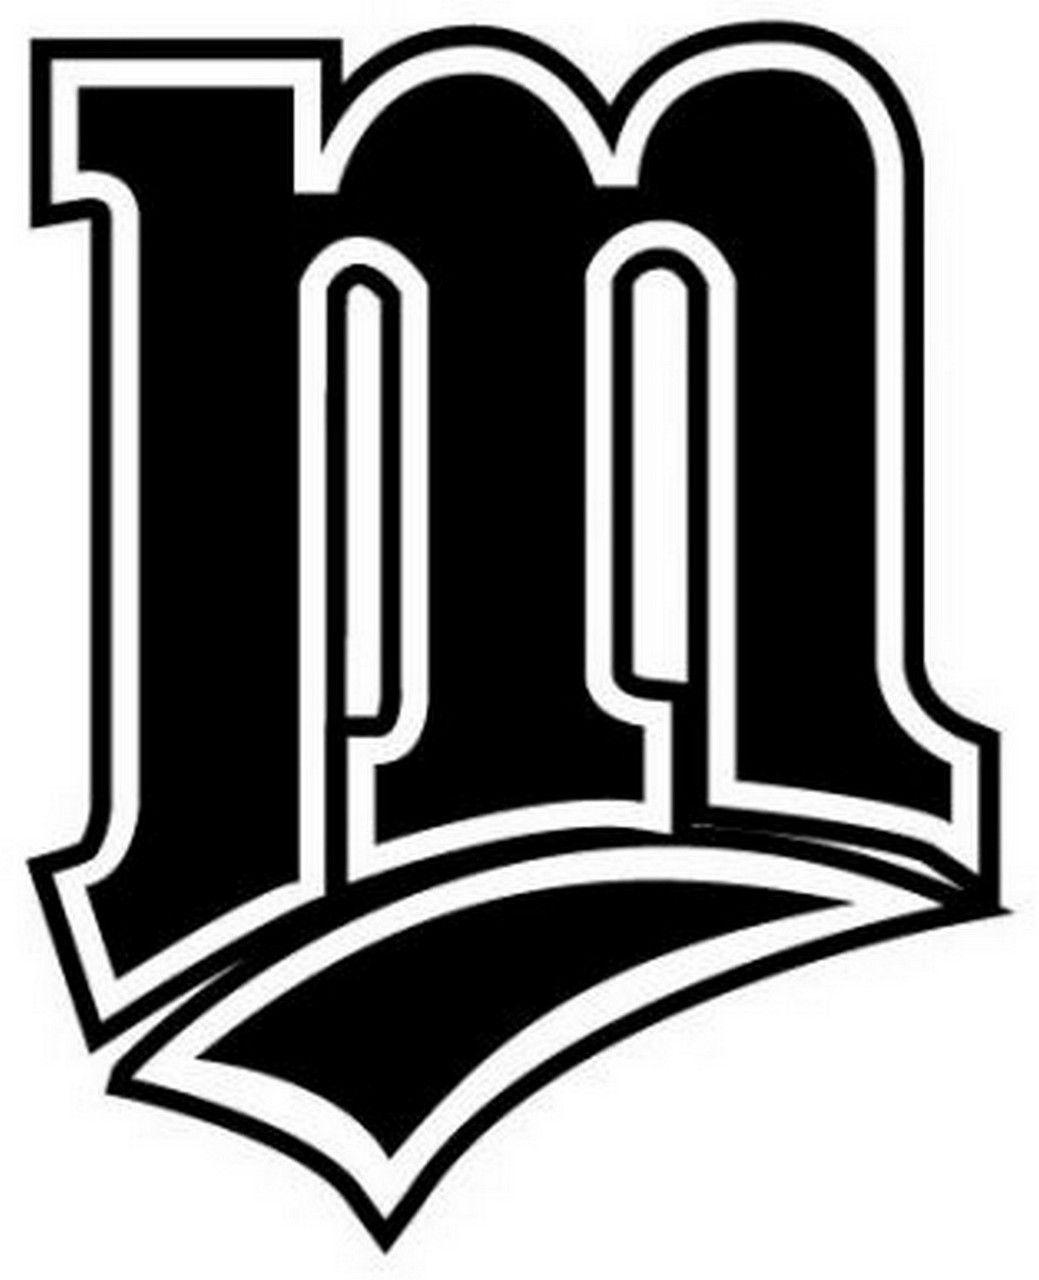 twins m logo